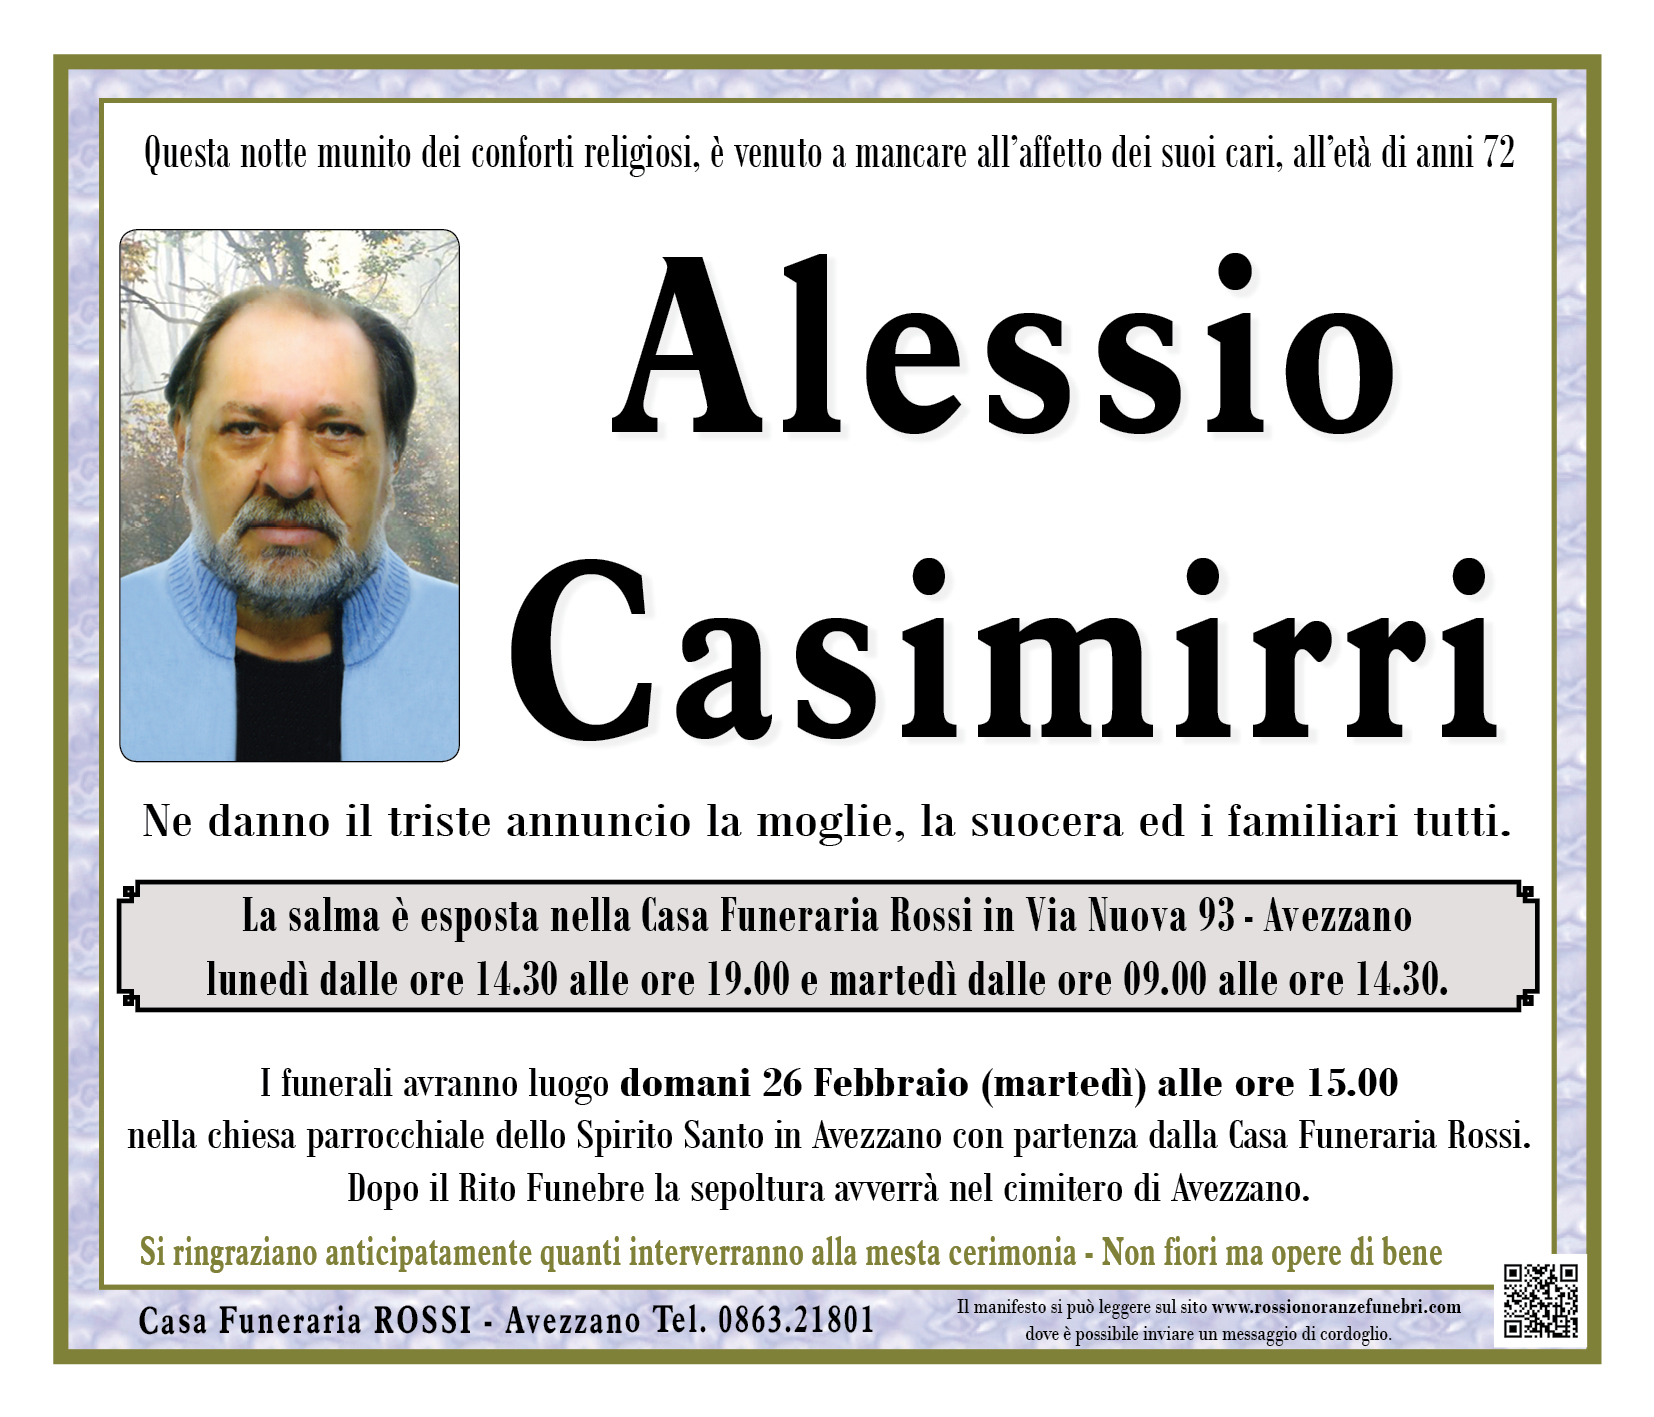 Alessio Casimirri